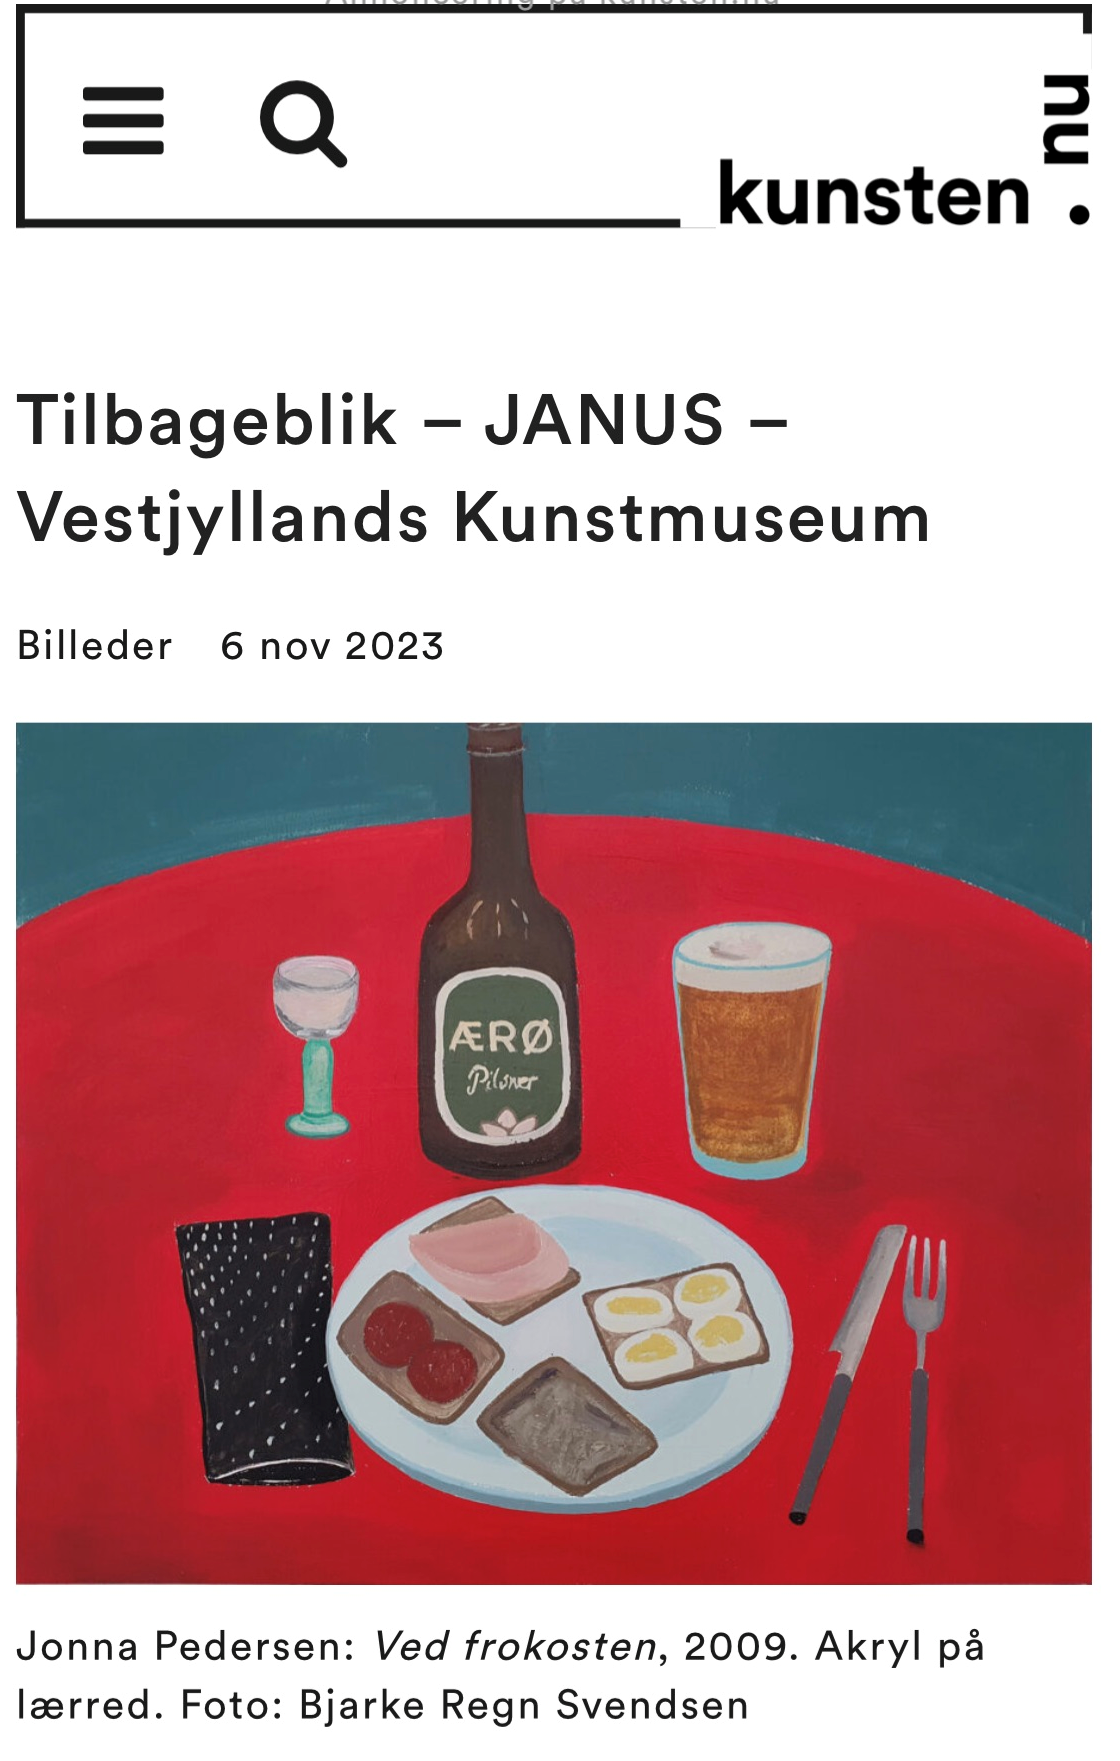 Tilbageblik - JANUS – Vestjyllands Kunstmuseum - kunsten.nu - Online magasin og kalender for billedkunst.png